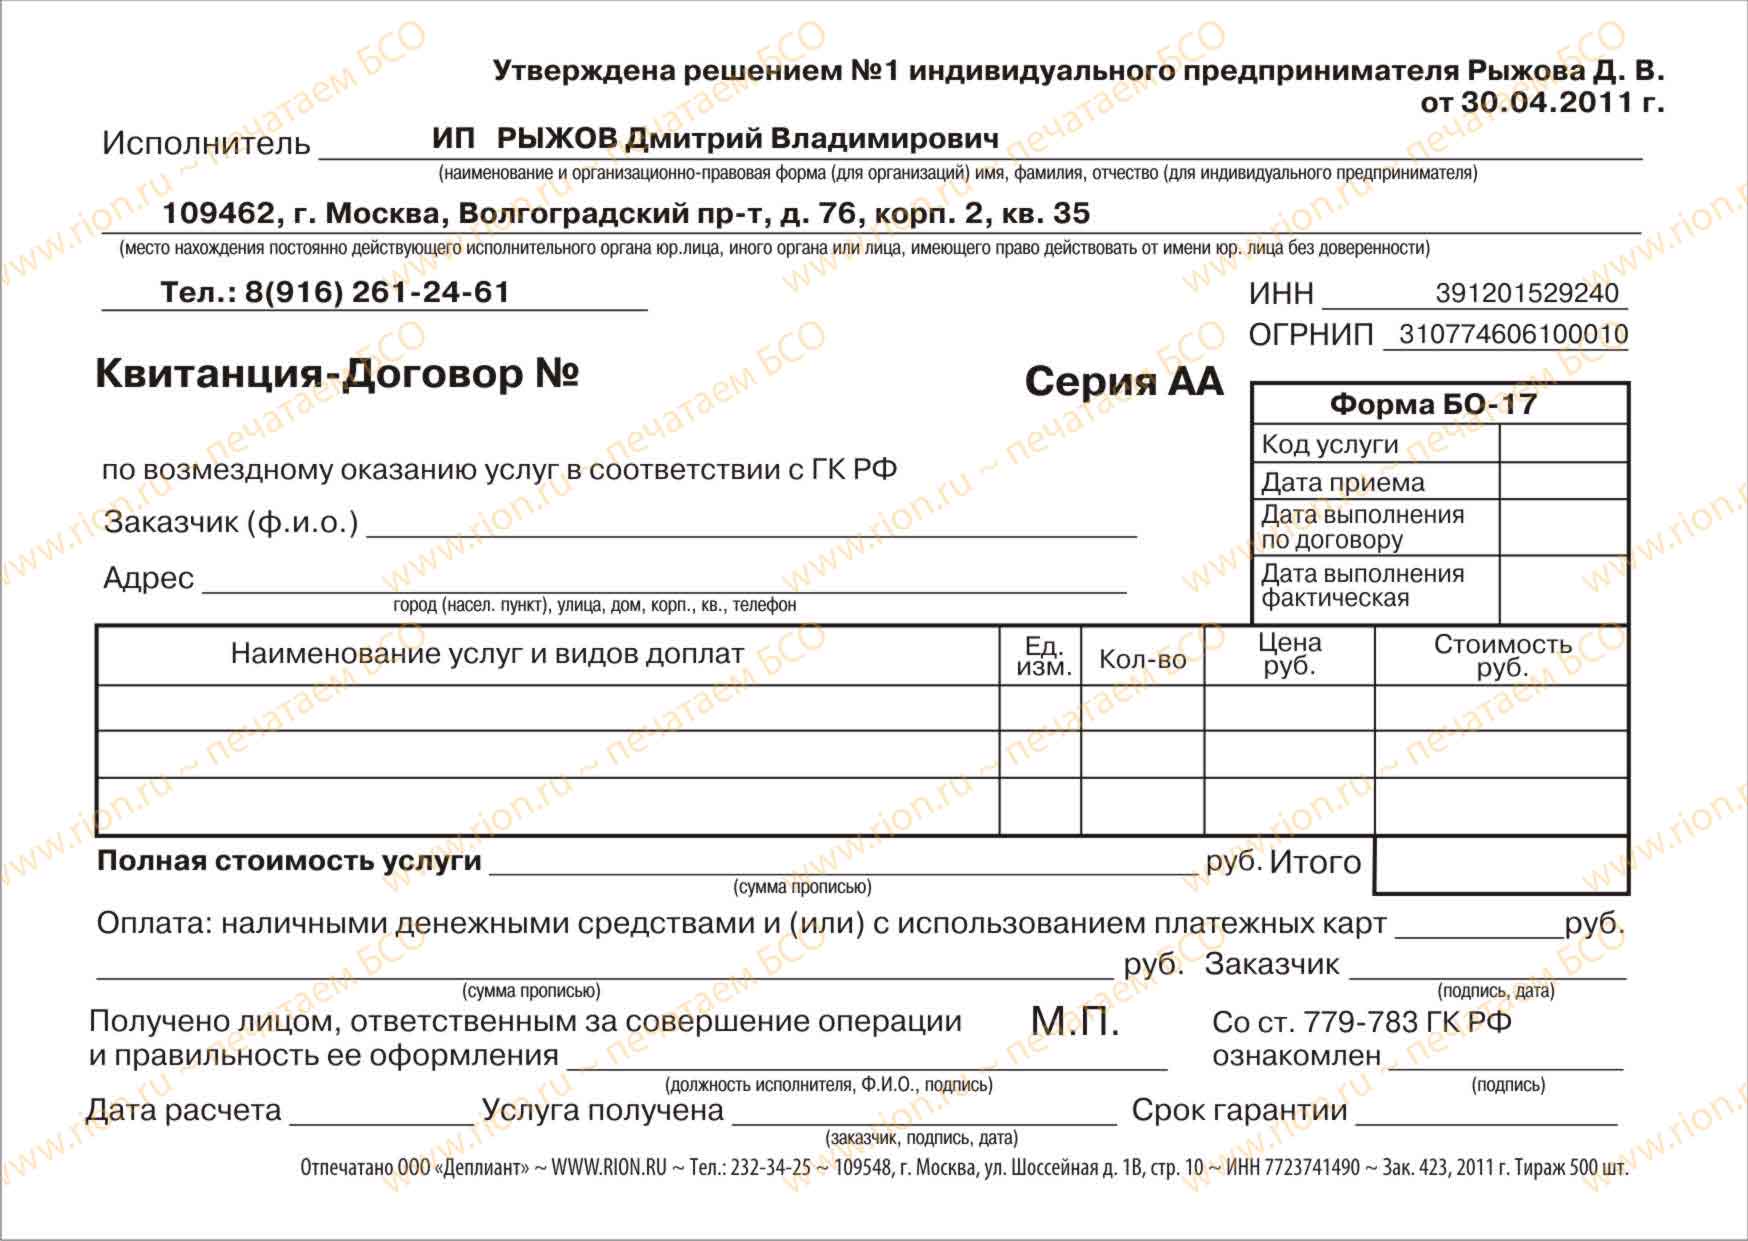 Квитанция-договор по возмездному оказанию услуг в соответствии с ГК РФ